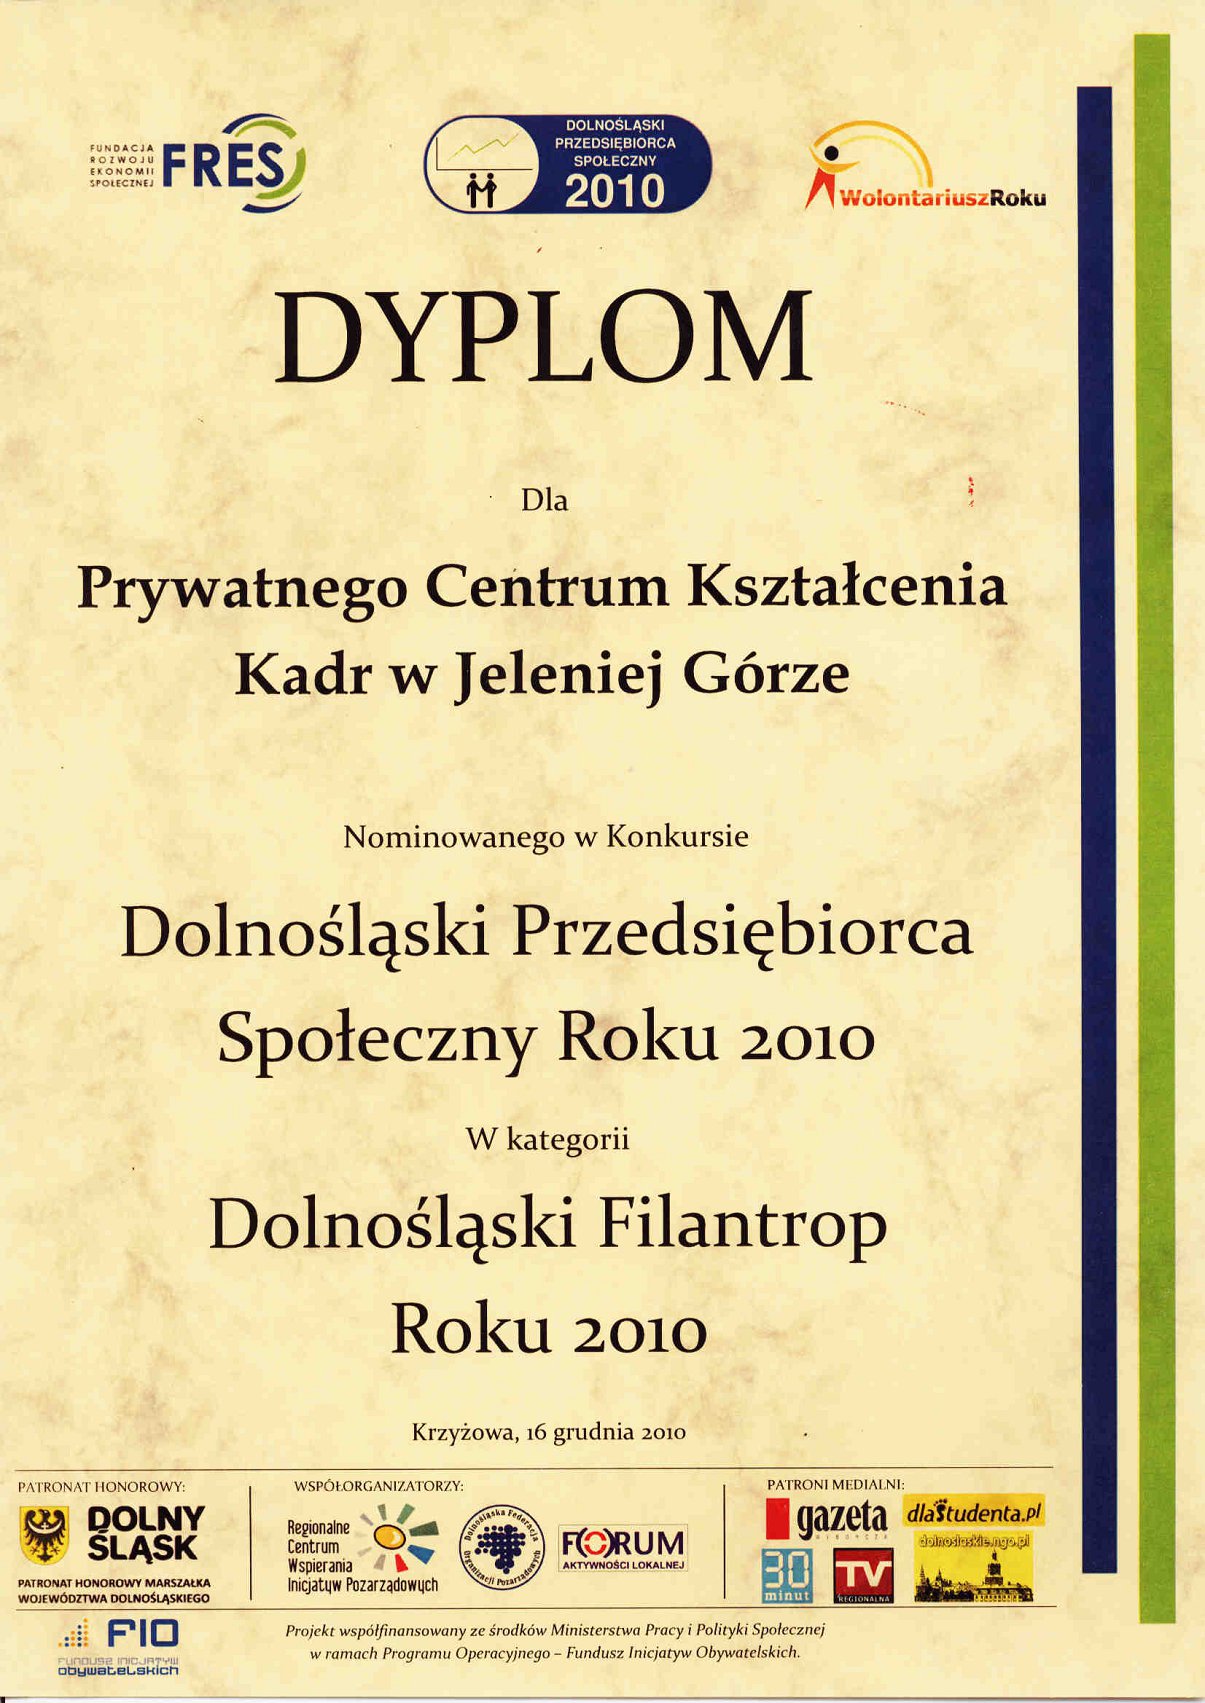 Dyplom uznania - Dolnośląski Filantrop